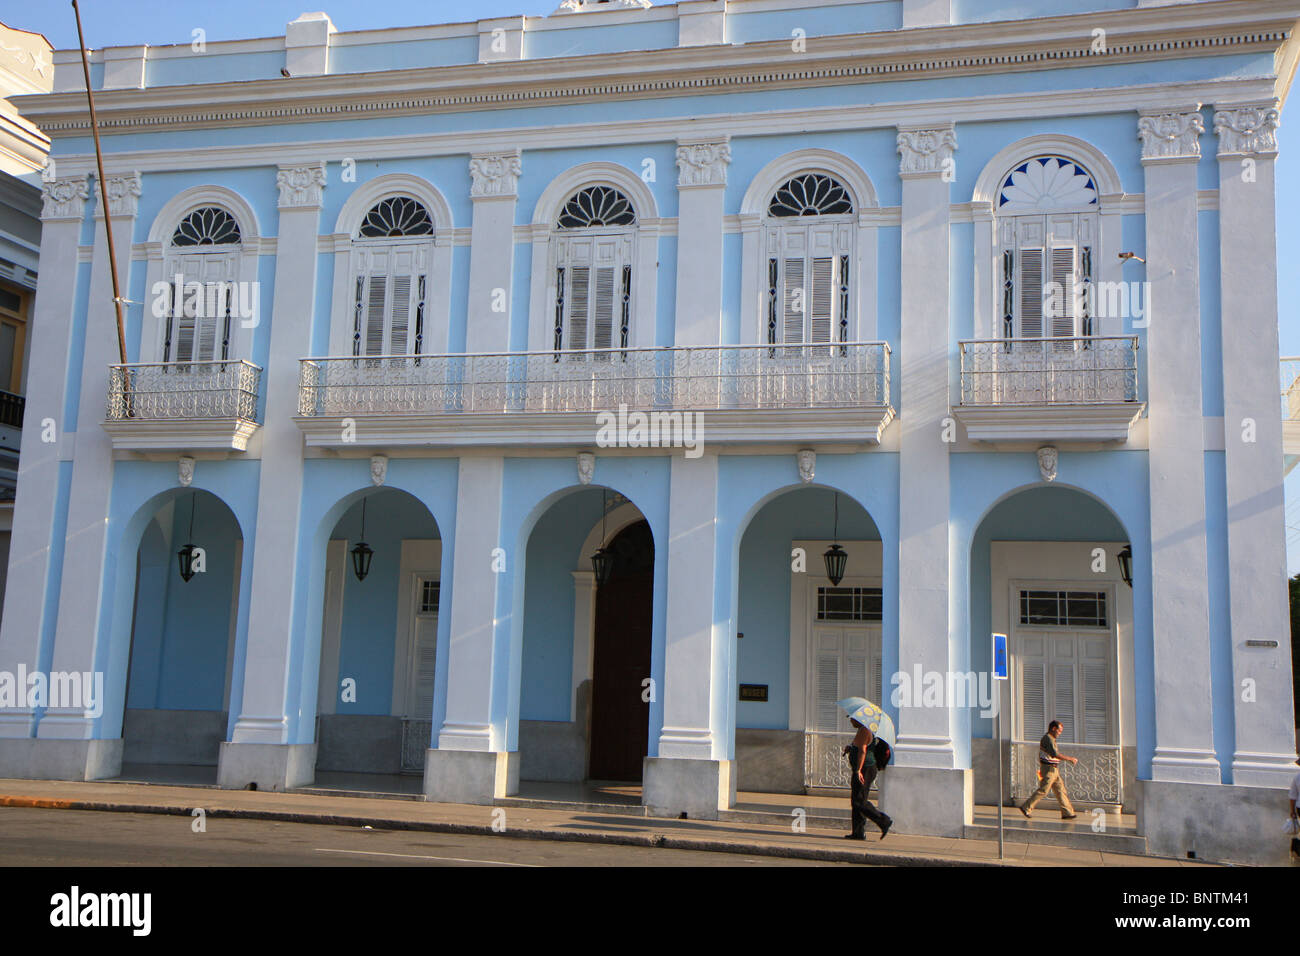 Maison de style colonial à Cienfuegos, Cuba Banque D'Images